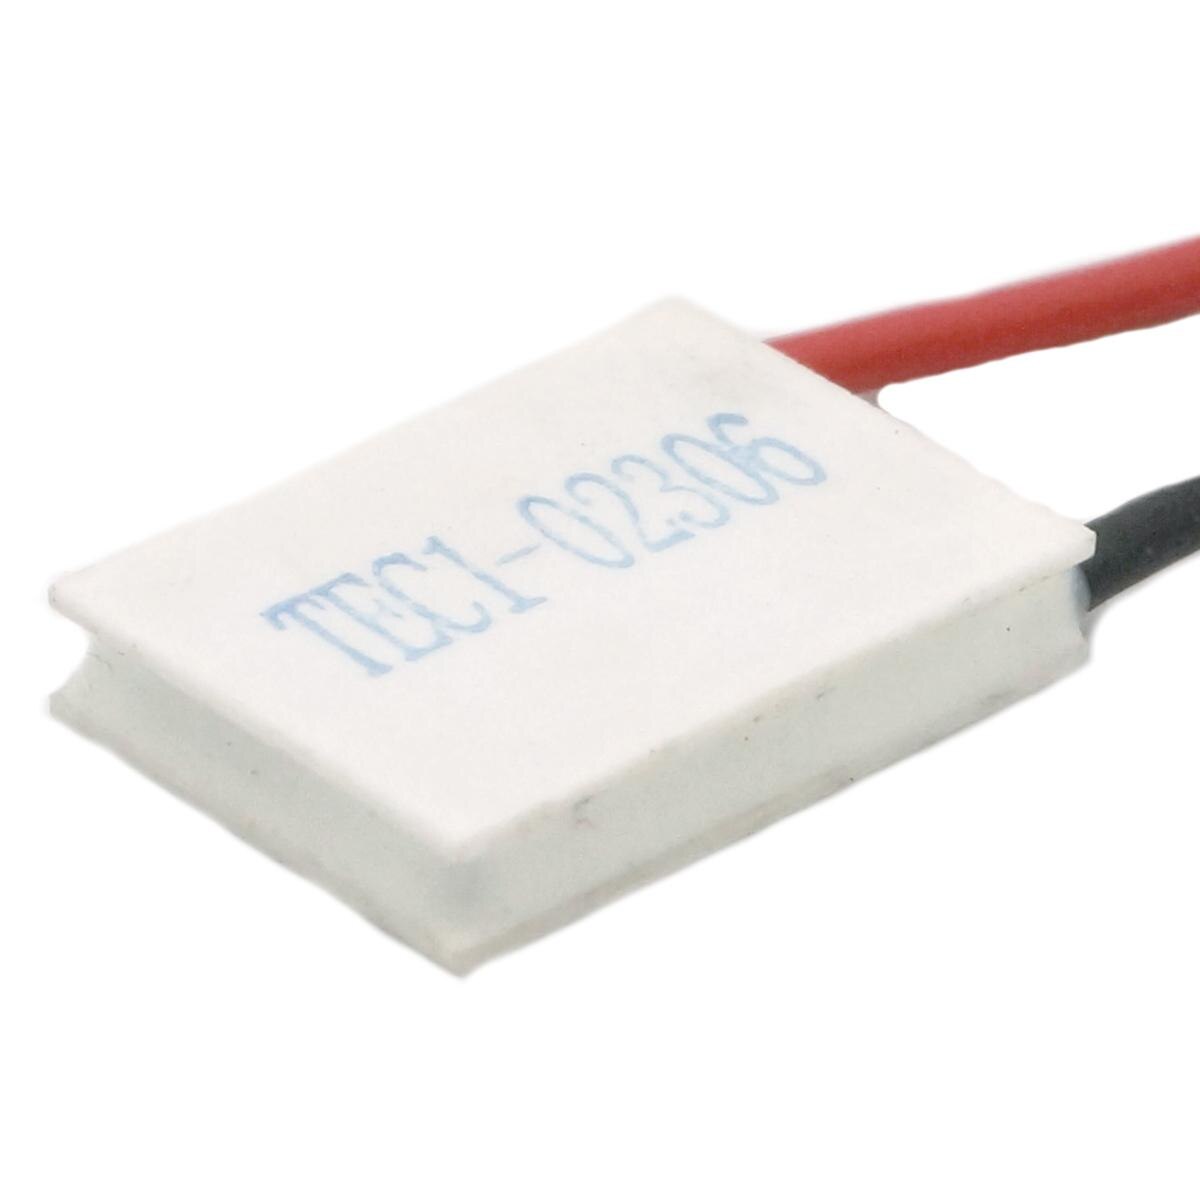 Plaque de refroidissement Peltier thermoélectrique pour dissipateur thermique, Module de réfrigération TEC1-02306 V, 15x20mm, 2.83